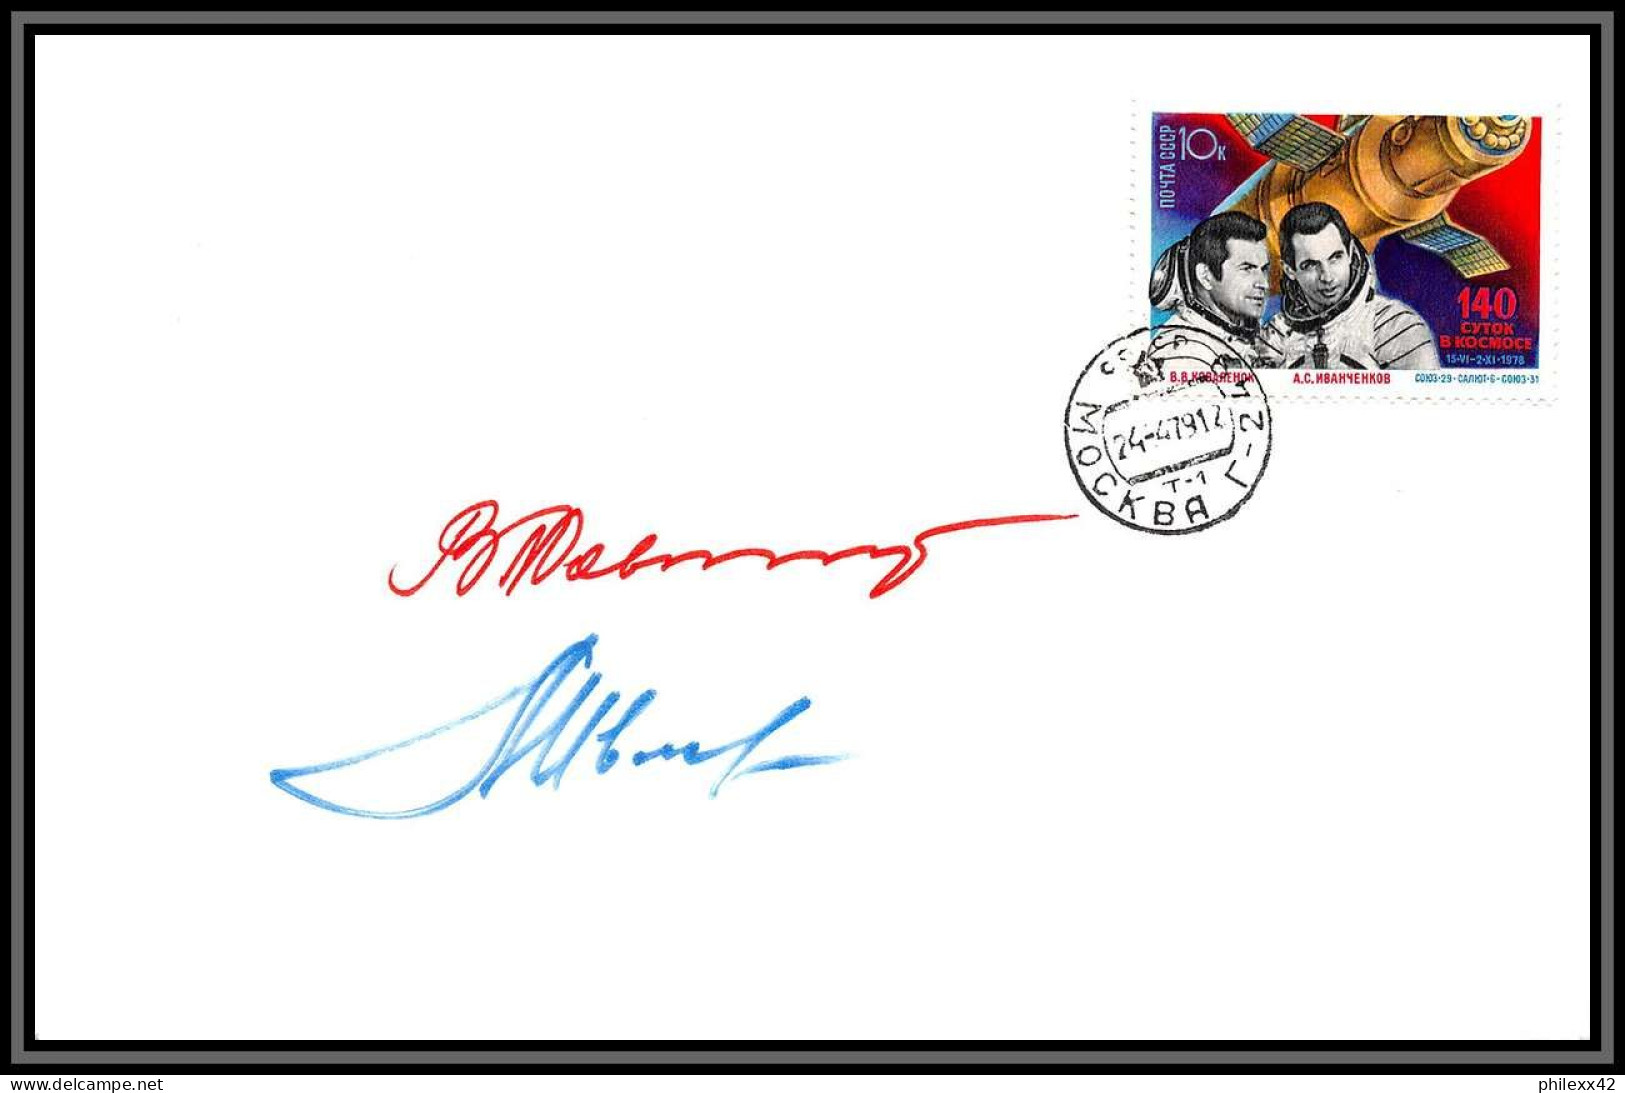 3500X Espace Space Lettre Cover Signé Signed Autograph Ivanchenkov Cosmonauts Russia Urss USSR 24/4/1979 Soyuz Soyouz 31 - Rusia & URSS